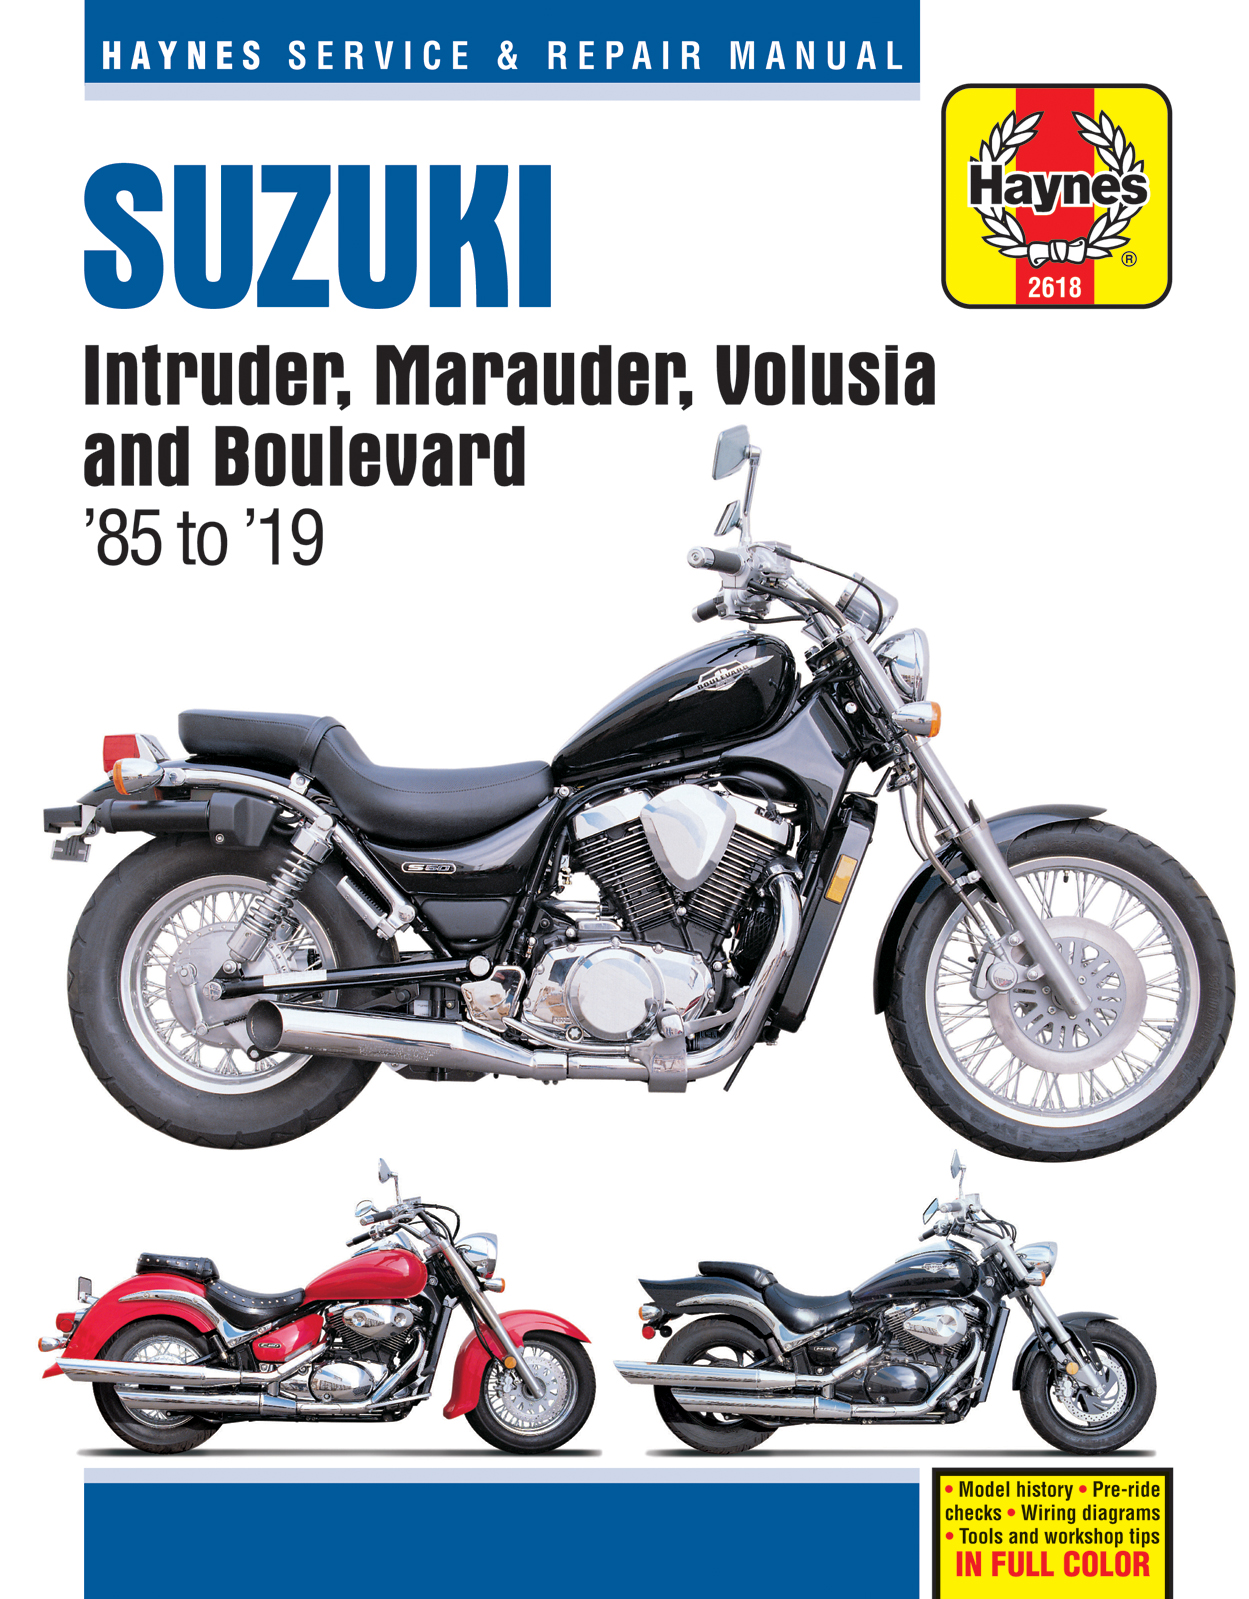 Clutch Plates Discs for Suzuki VZ800 M50 Marauder Intruder M800 Boulevard 97-14